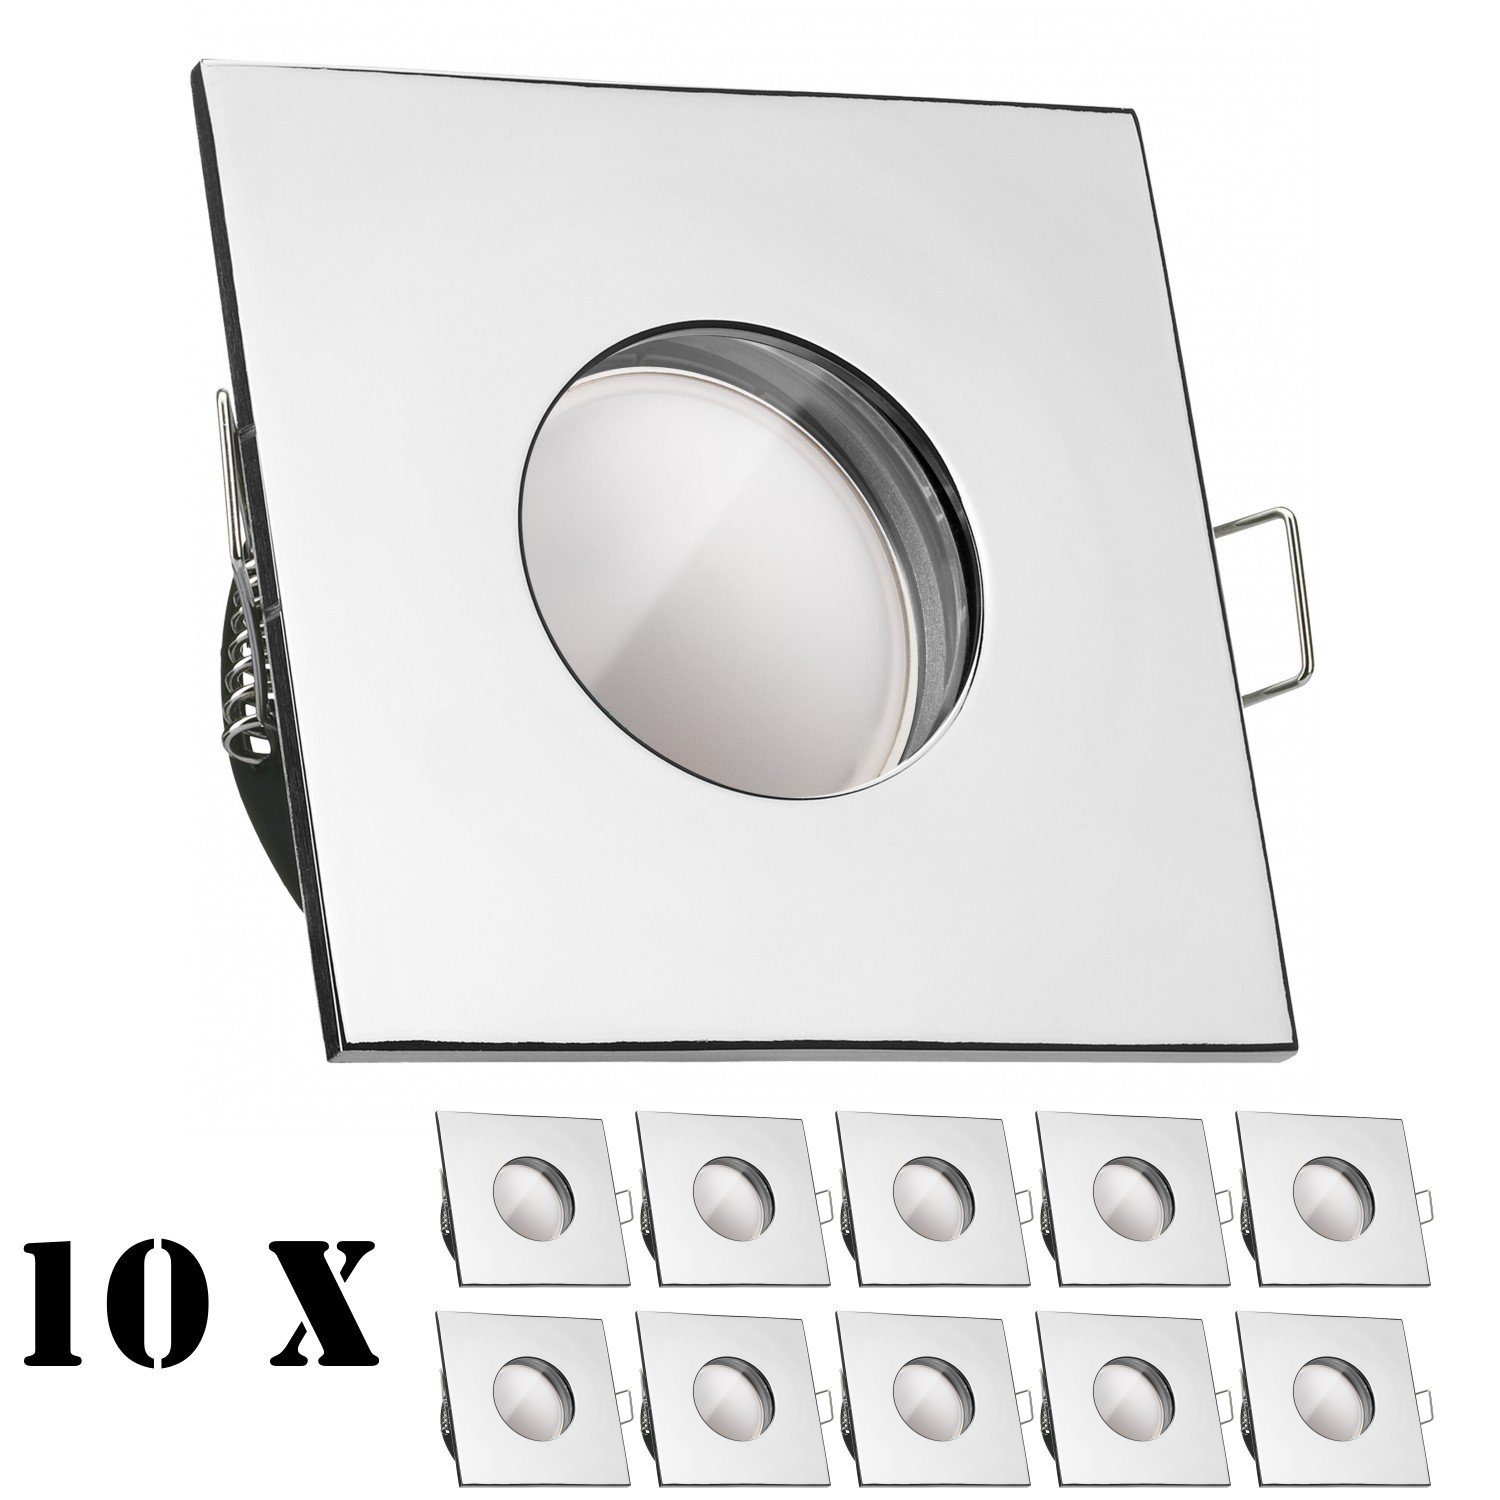 Neue Ware zu günstigen Preisen LEDANDO LED chrom extra Einbaustrahler in 10er 5W LED mit flach IP65 Einbaustrahler Leuchtmit Set